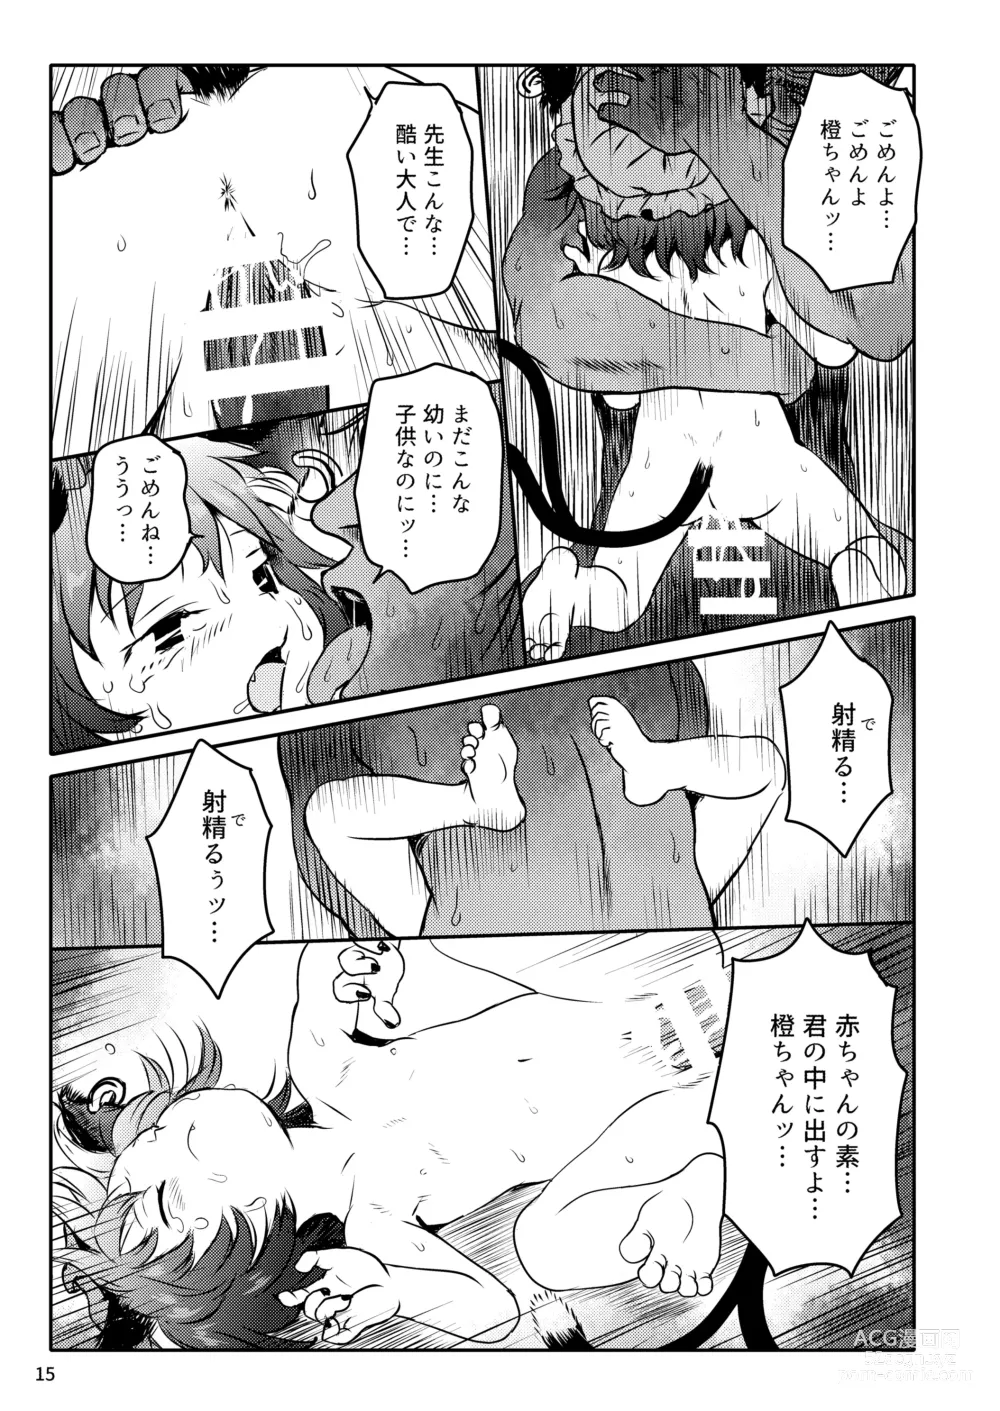 Page 15 of doujinshi Maseneko! Chen-chan!